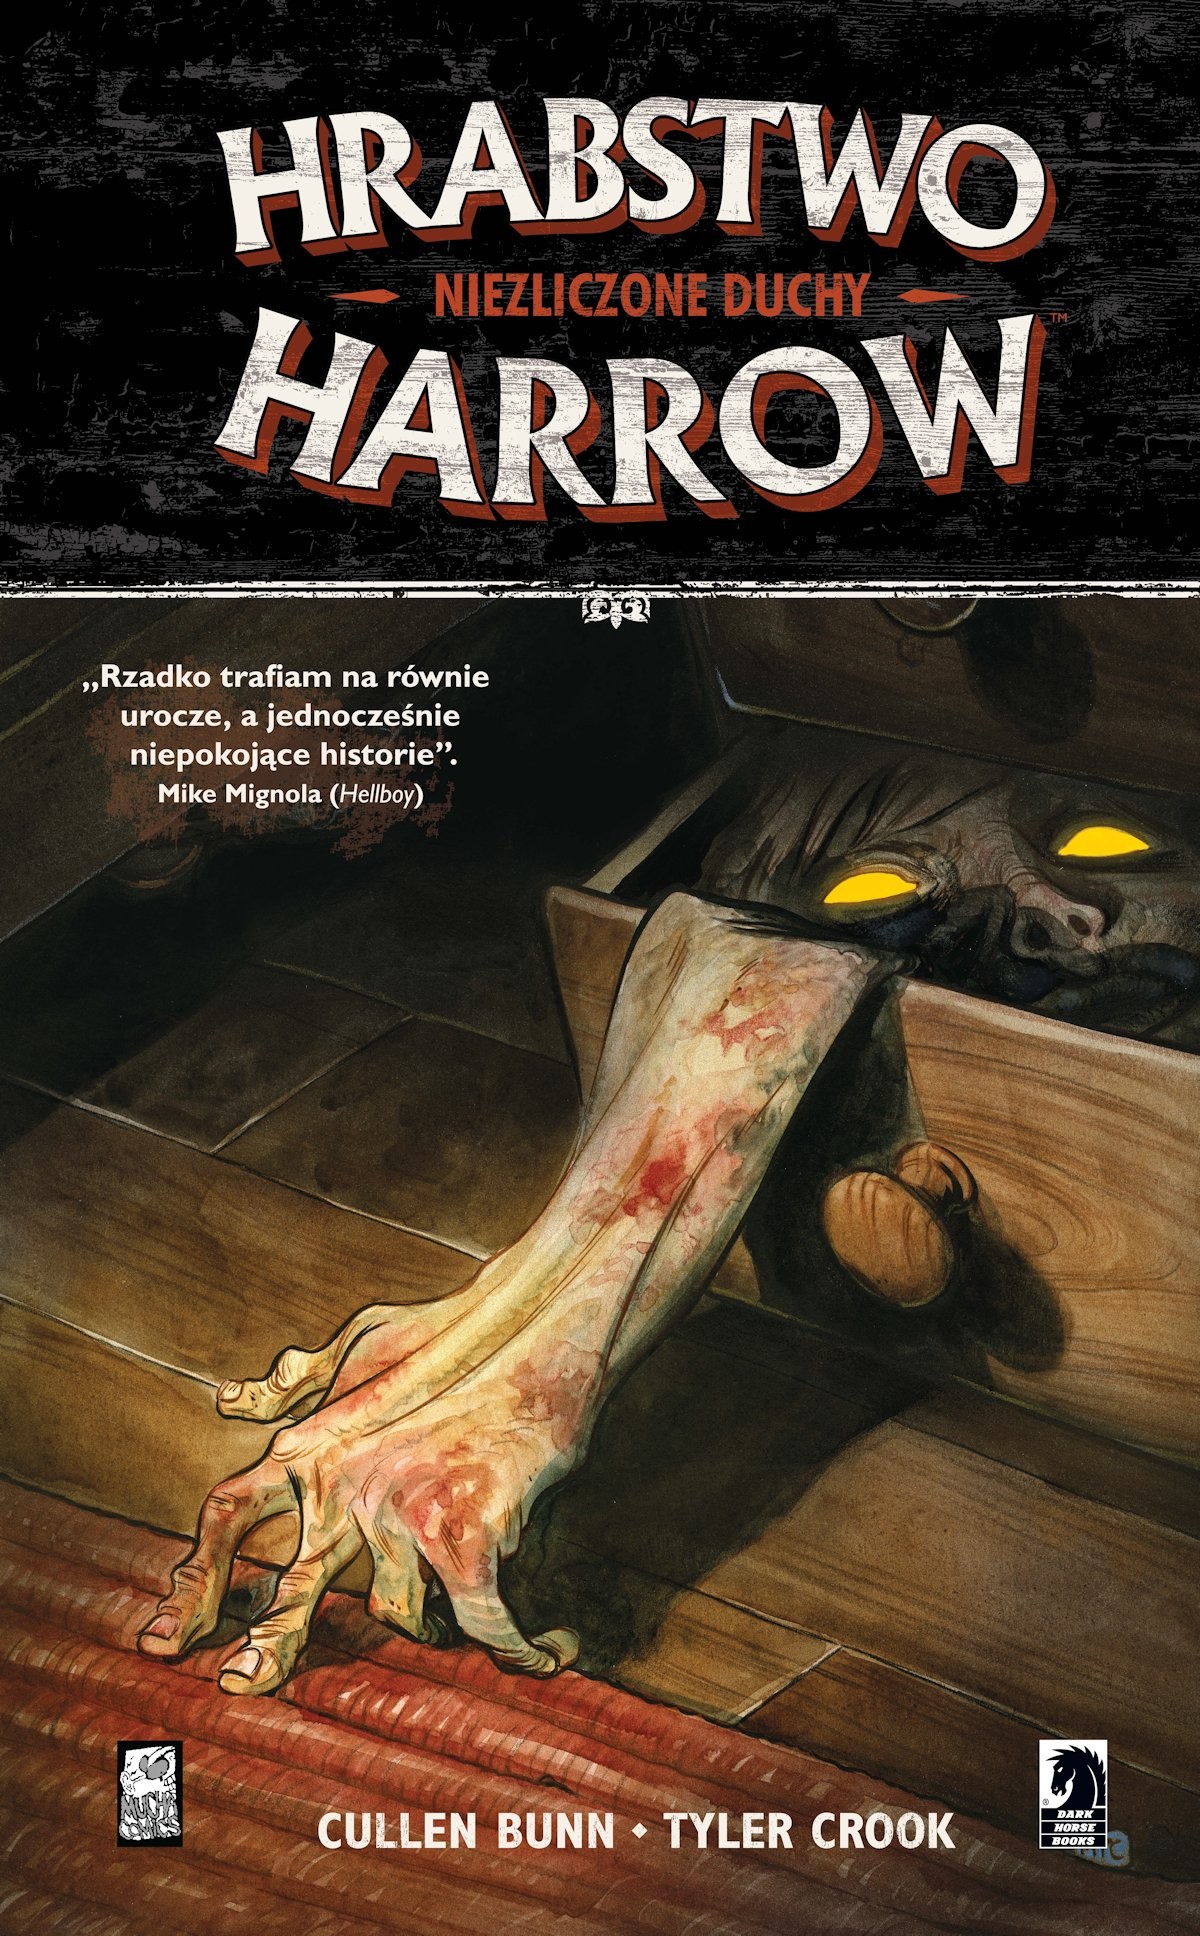 Hrabstwo Harrow: Niezliczone duchy, tom 1